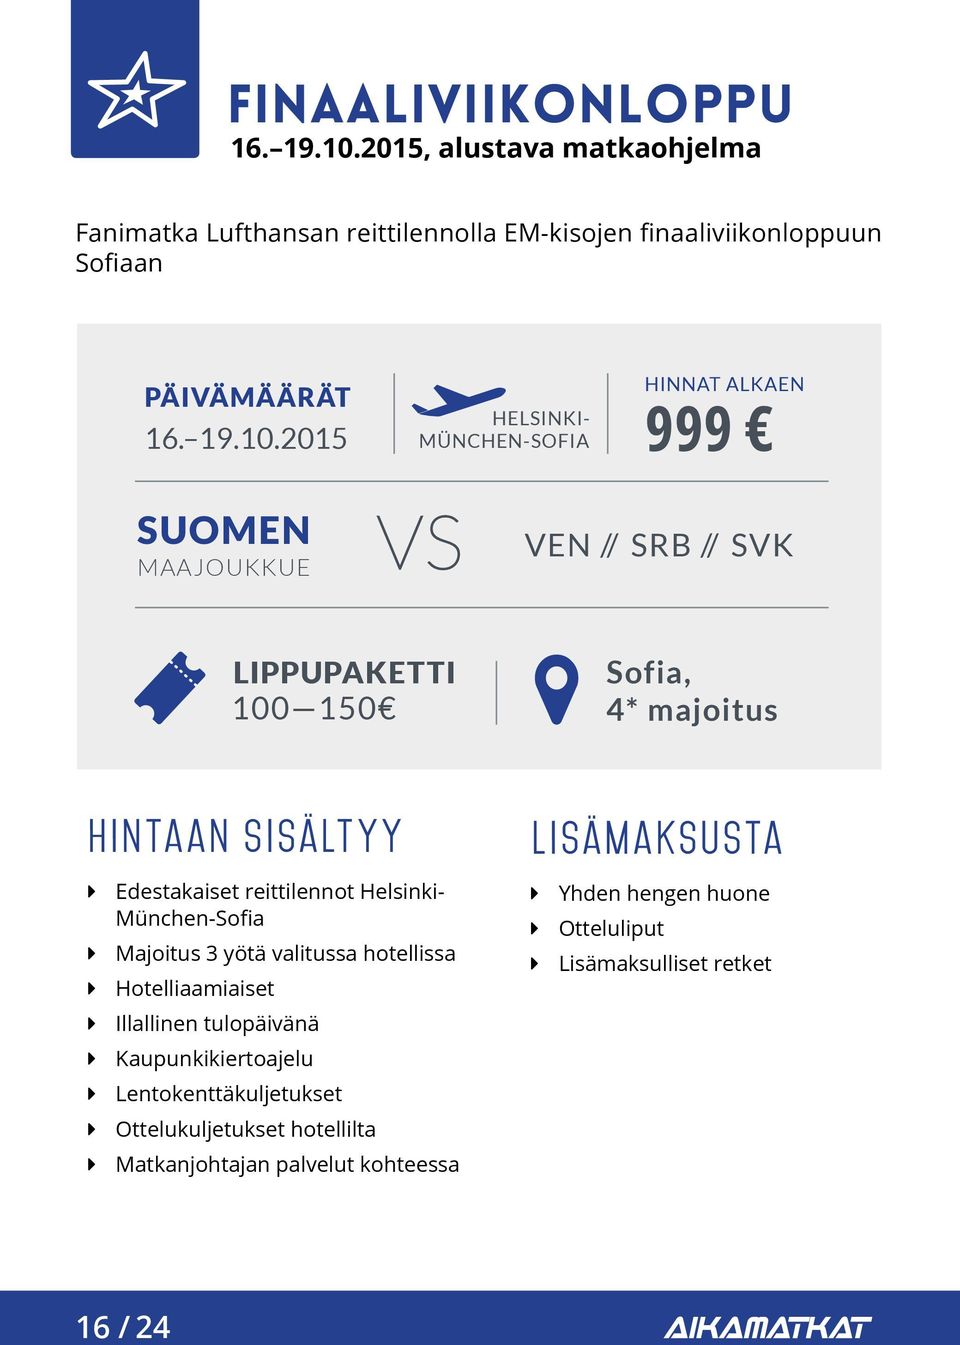 2015 HELSINKI- MÜNCHEN-SOFIA HINNAT ALKAEN 999 SUOMEN MAAJOUKKUE VEN // SRB // SVK LIPPUPAKETTI 100 150 Sofia, 4* majoitus hintaan sisältyy